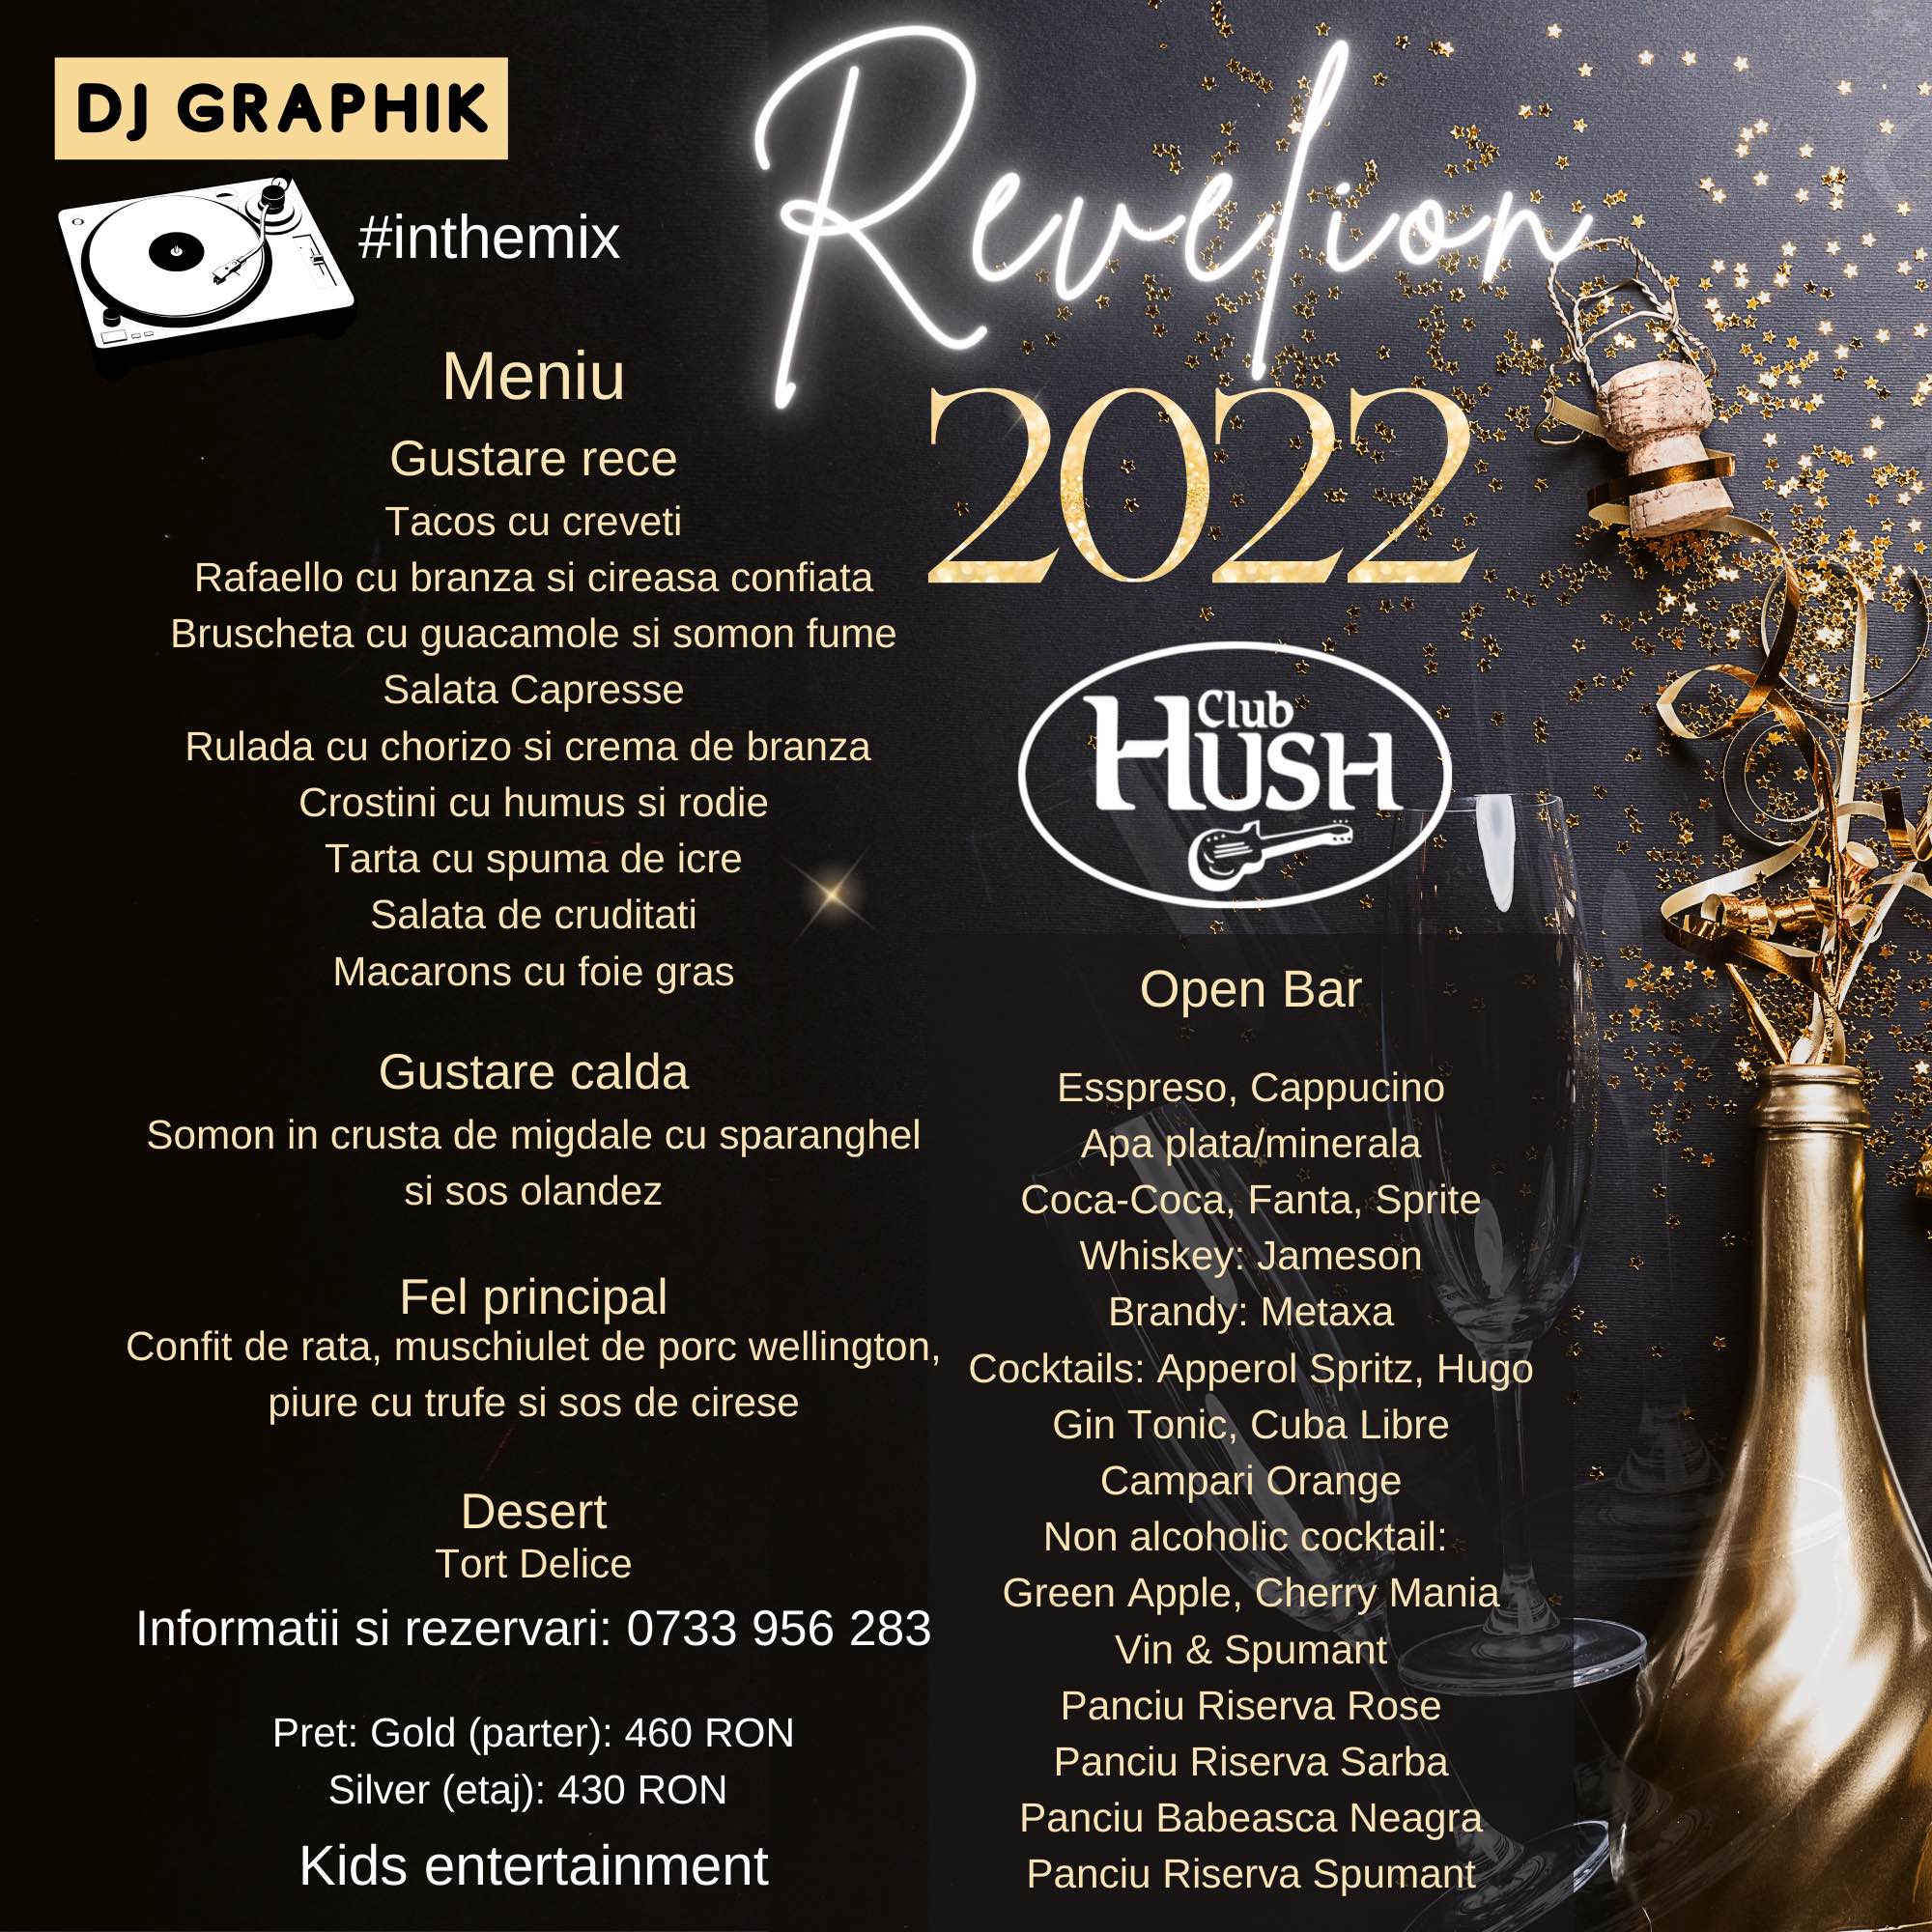 Revelion 2022 by Club Hush